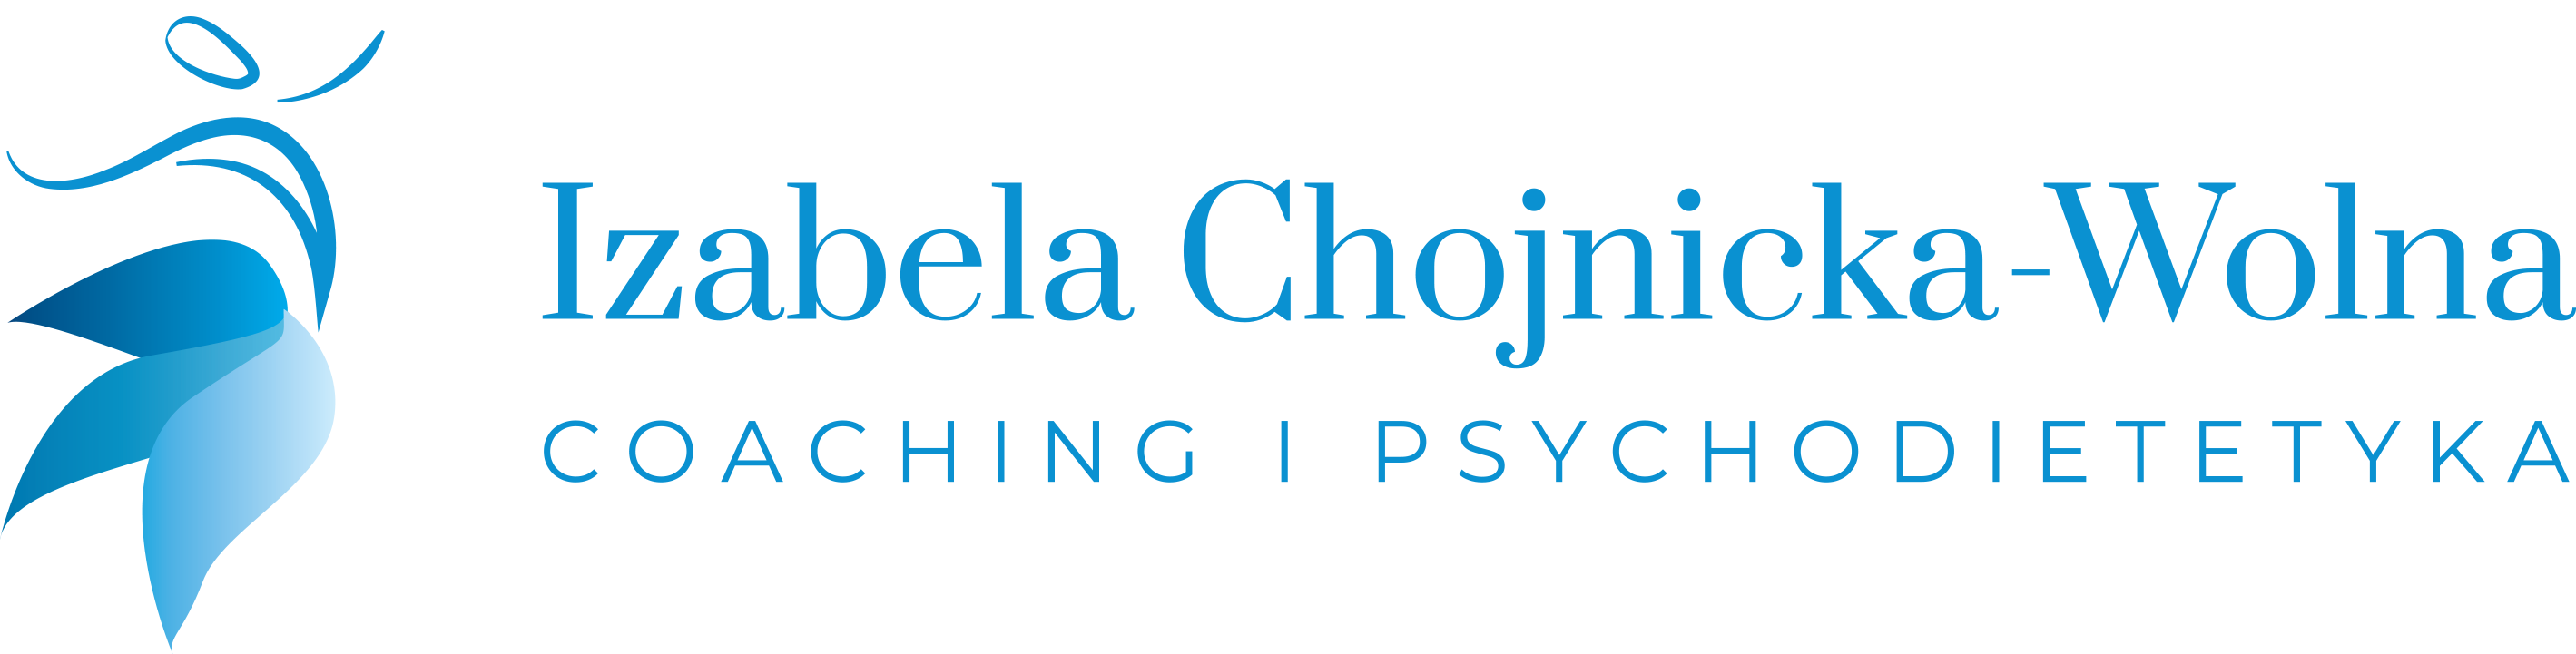 Izabela Chojnicka-Wolna Coaching Zdrowia i Psychodietetyka :: redukcja stresu, odporność psychiczna, zdrowe odchudzanie, zdrowe odżywianie, slow life online i w Grodzisku Mazowieckim